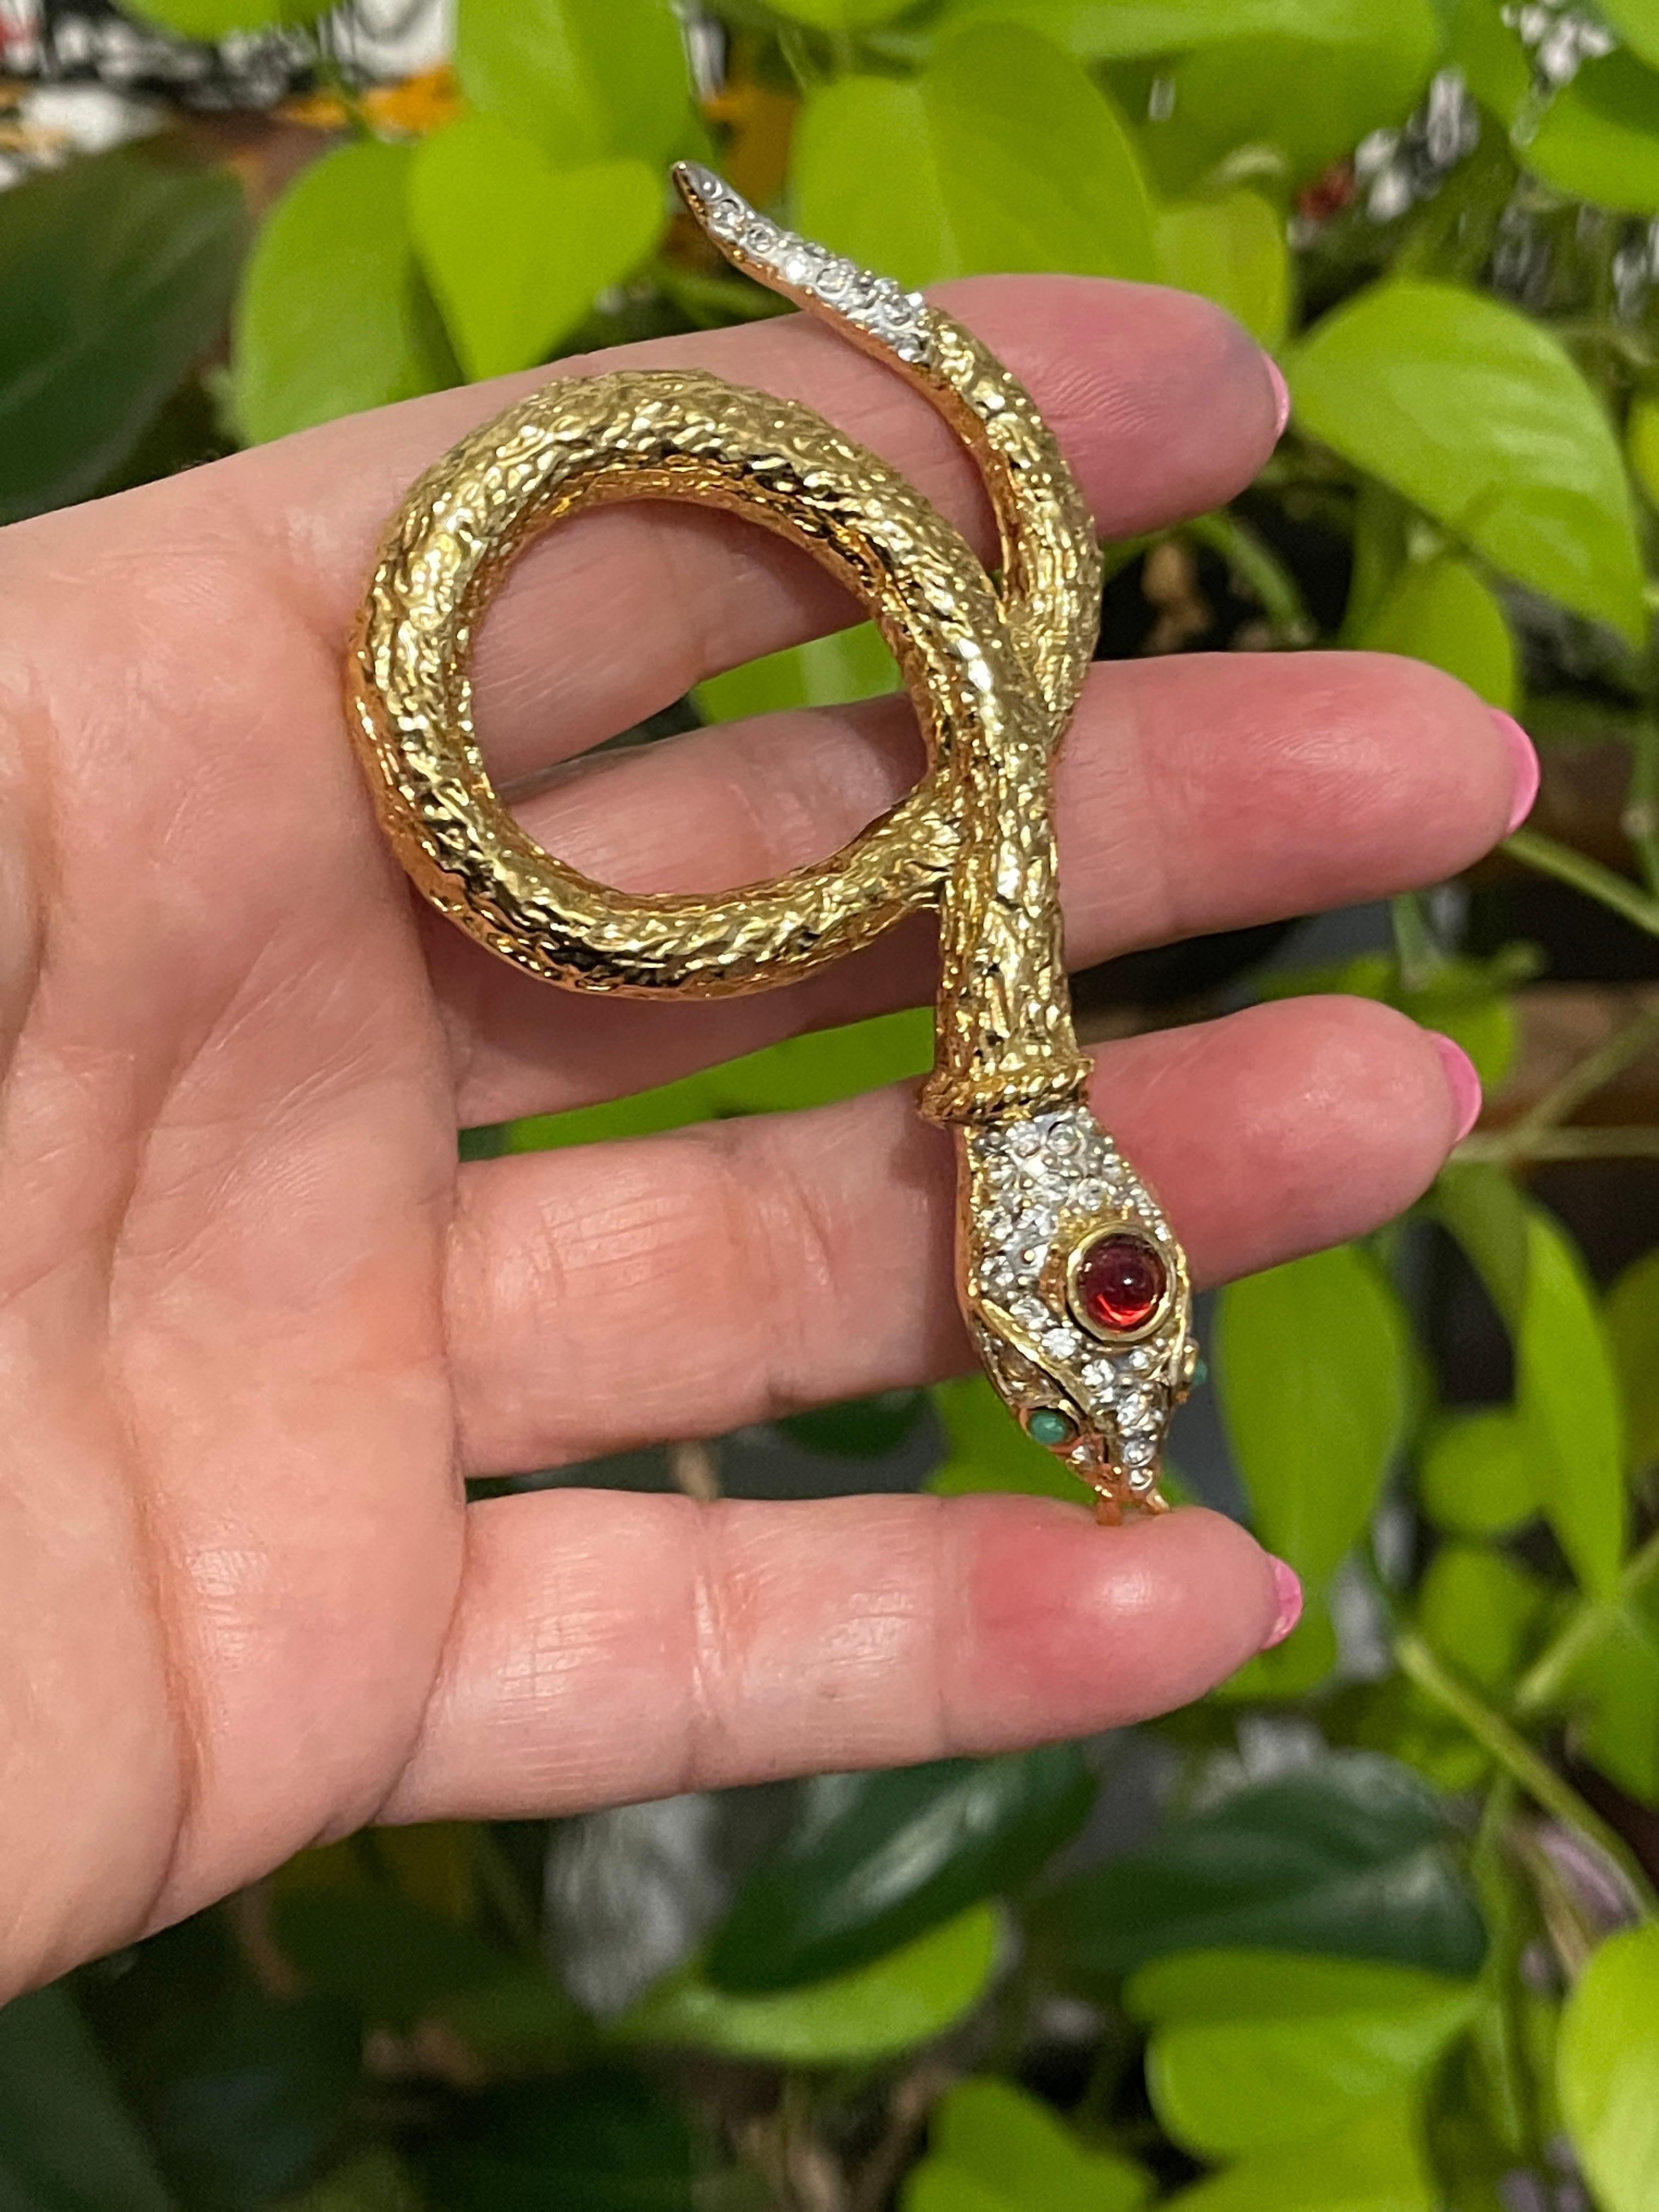 Yosca Serpent Snake Brooch pin New, Never worn 1980s Gold Gilt  4